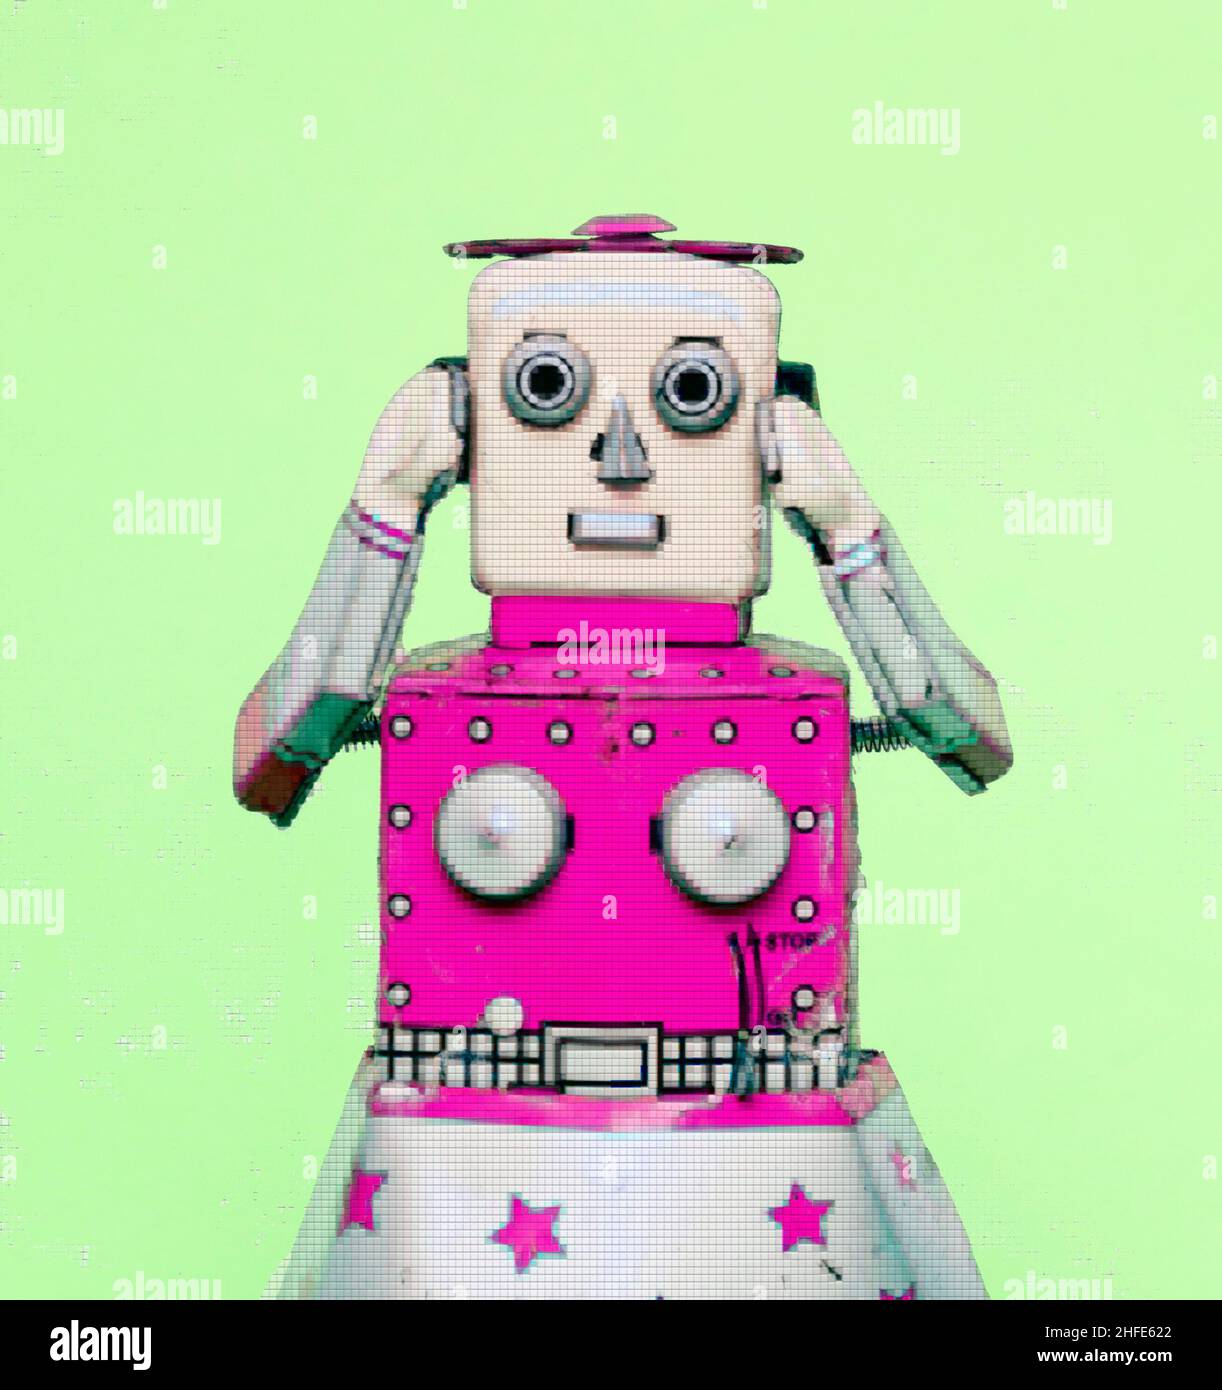 retro robot toy Stock Photo